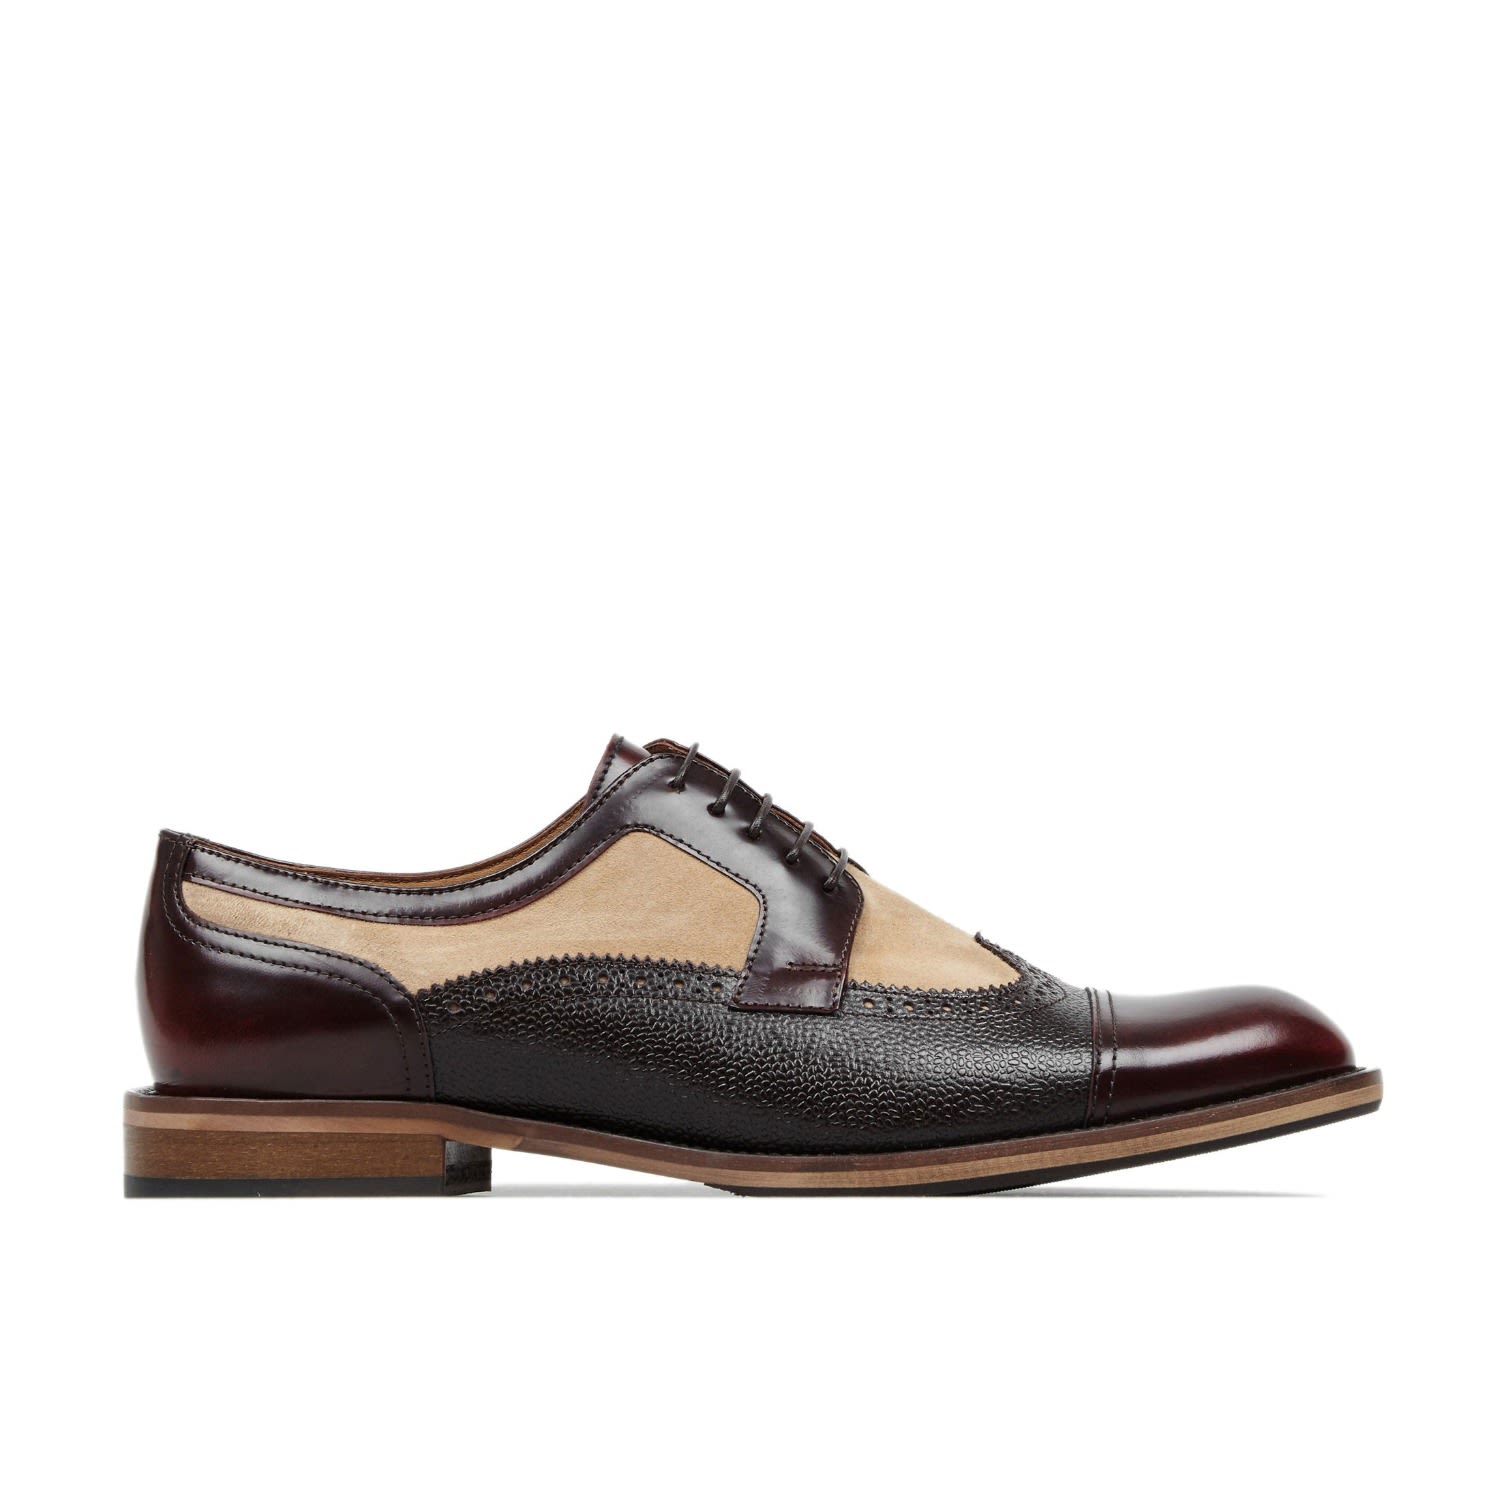 Brown / Neutrals Orlando - Burgundy, Beige, Dark Brown - Men’s Oxford Shoes 8 Uk Embassy London Usa